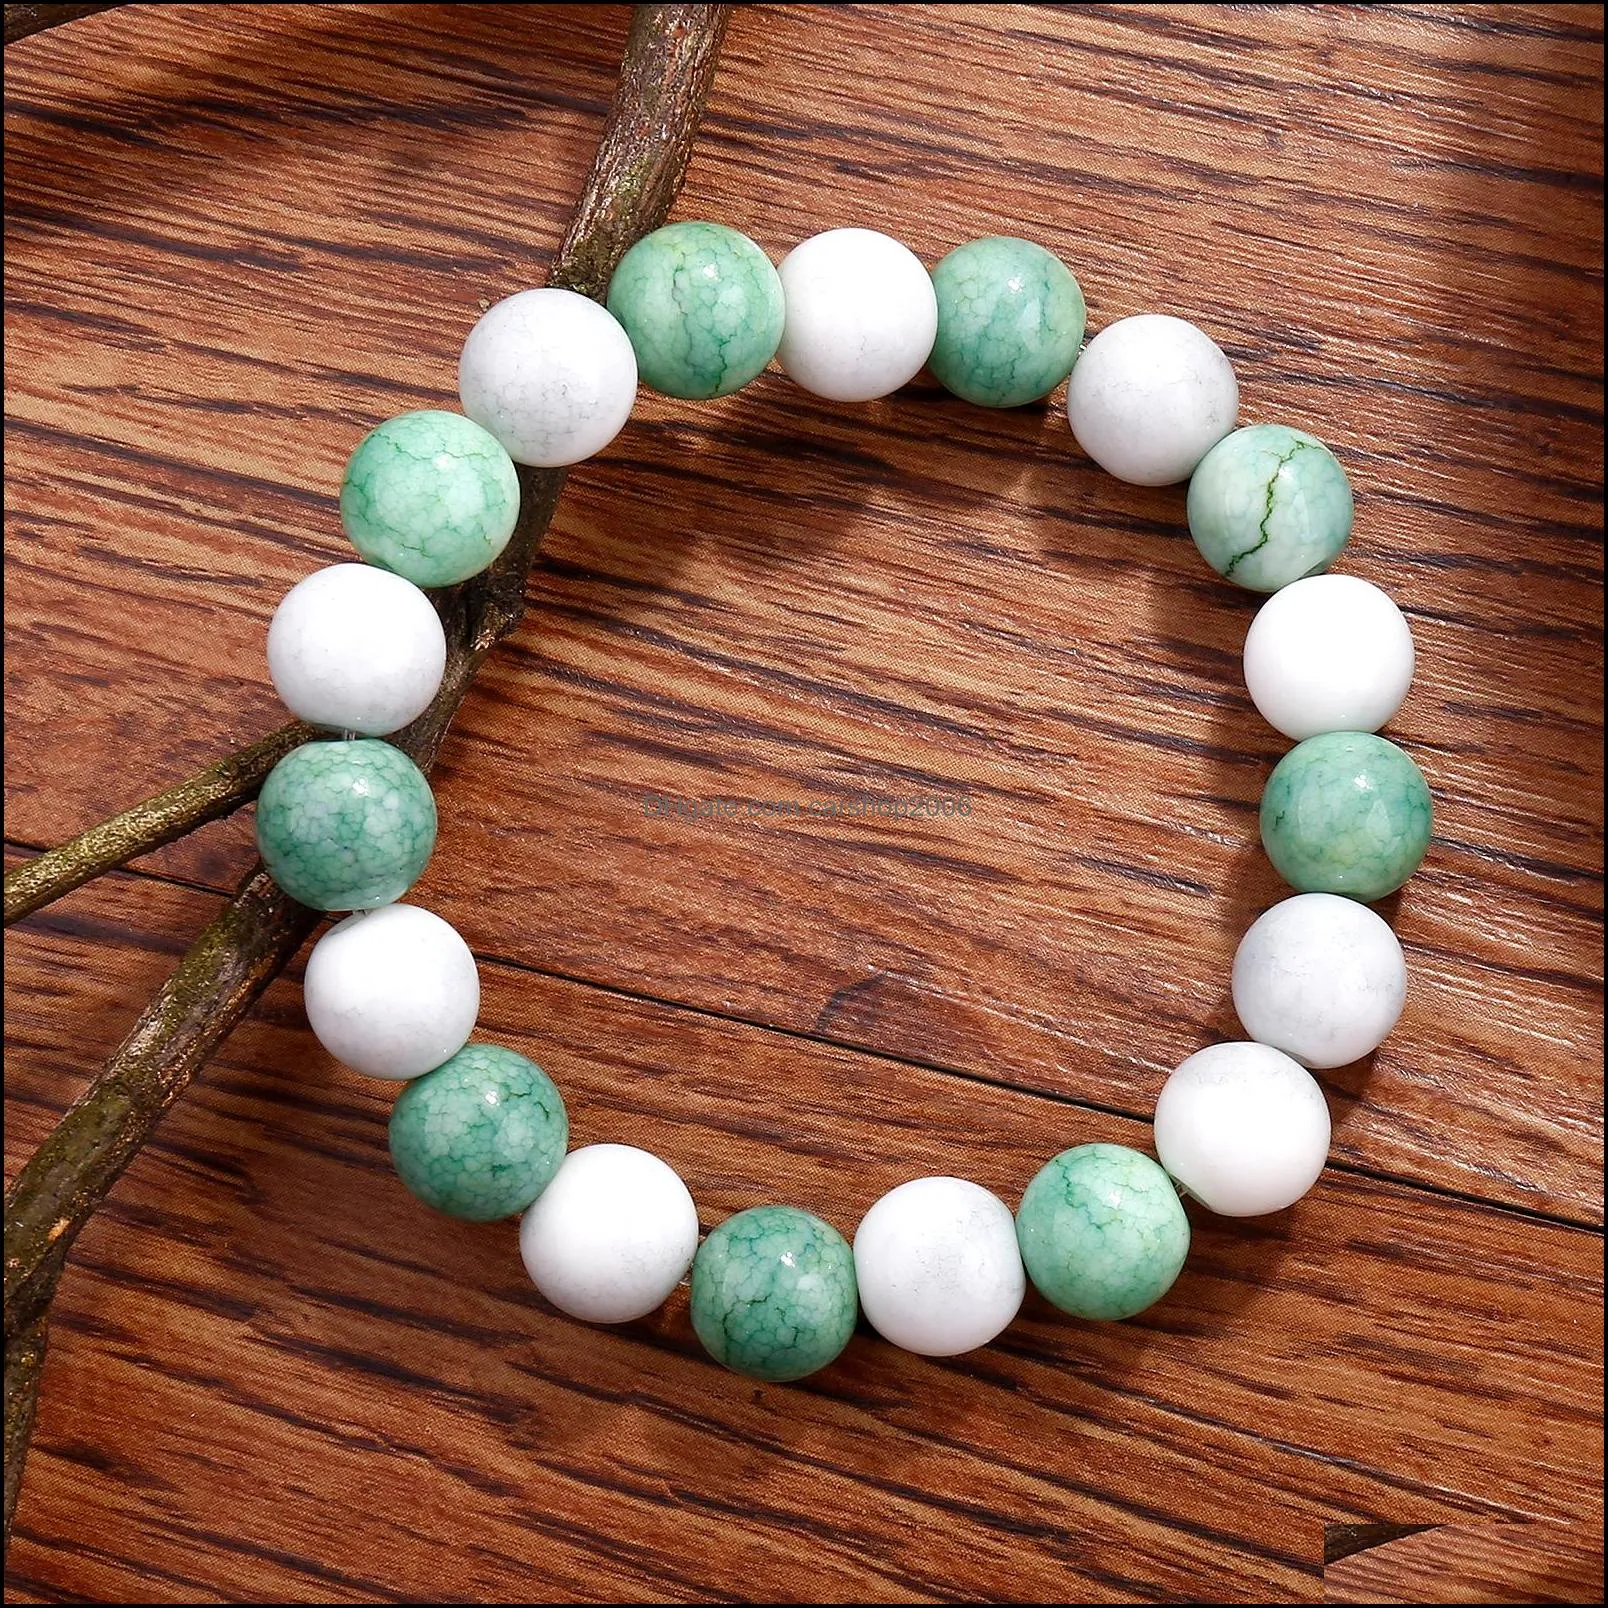 natural stone bracelet men 10mm beads elastic chain bracelet charm chakra healing reiki yoga bracelets for women jewelry gift